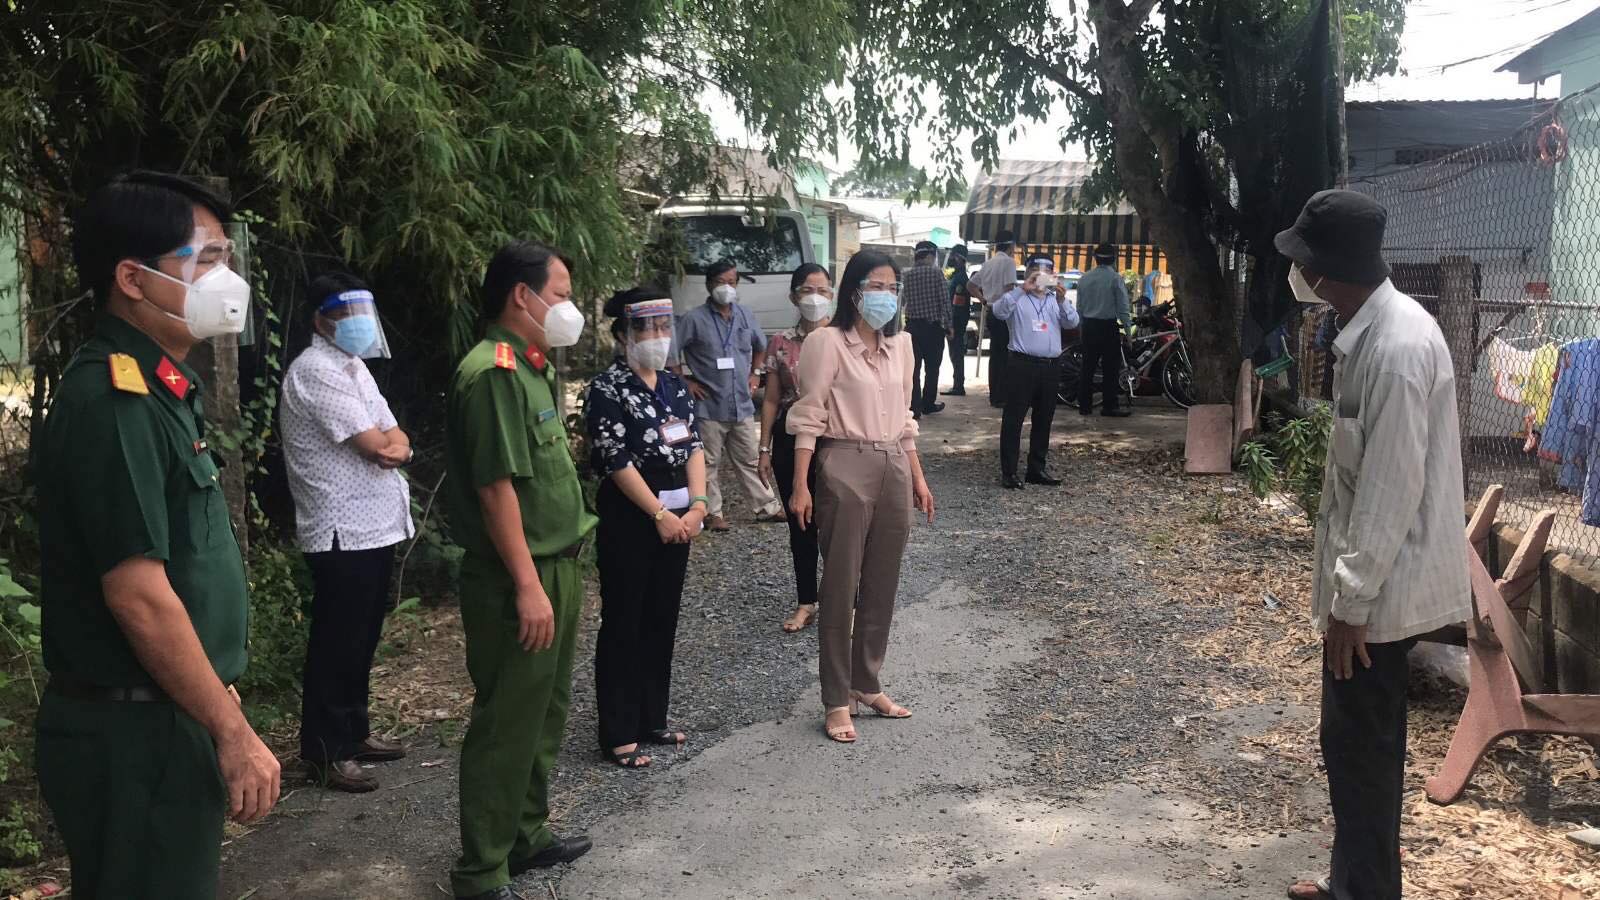 Bà Phạm Thị Thanh Hiền - Chủ tịch UBND huyện Củ Chi (thứ 5 từ trái sang) kiểm tra đánh giá nguy cơ lây nhiễm tại khu nhà trọ xã Tân Phú Trung